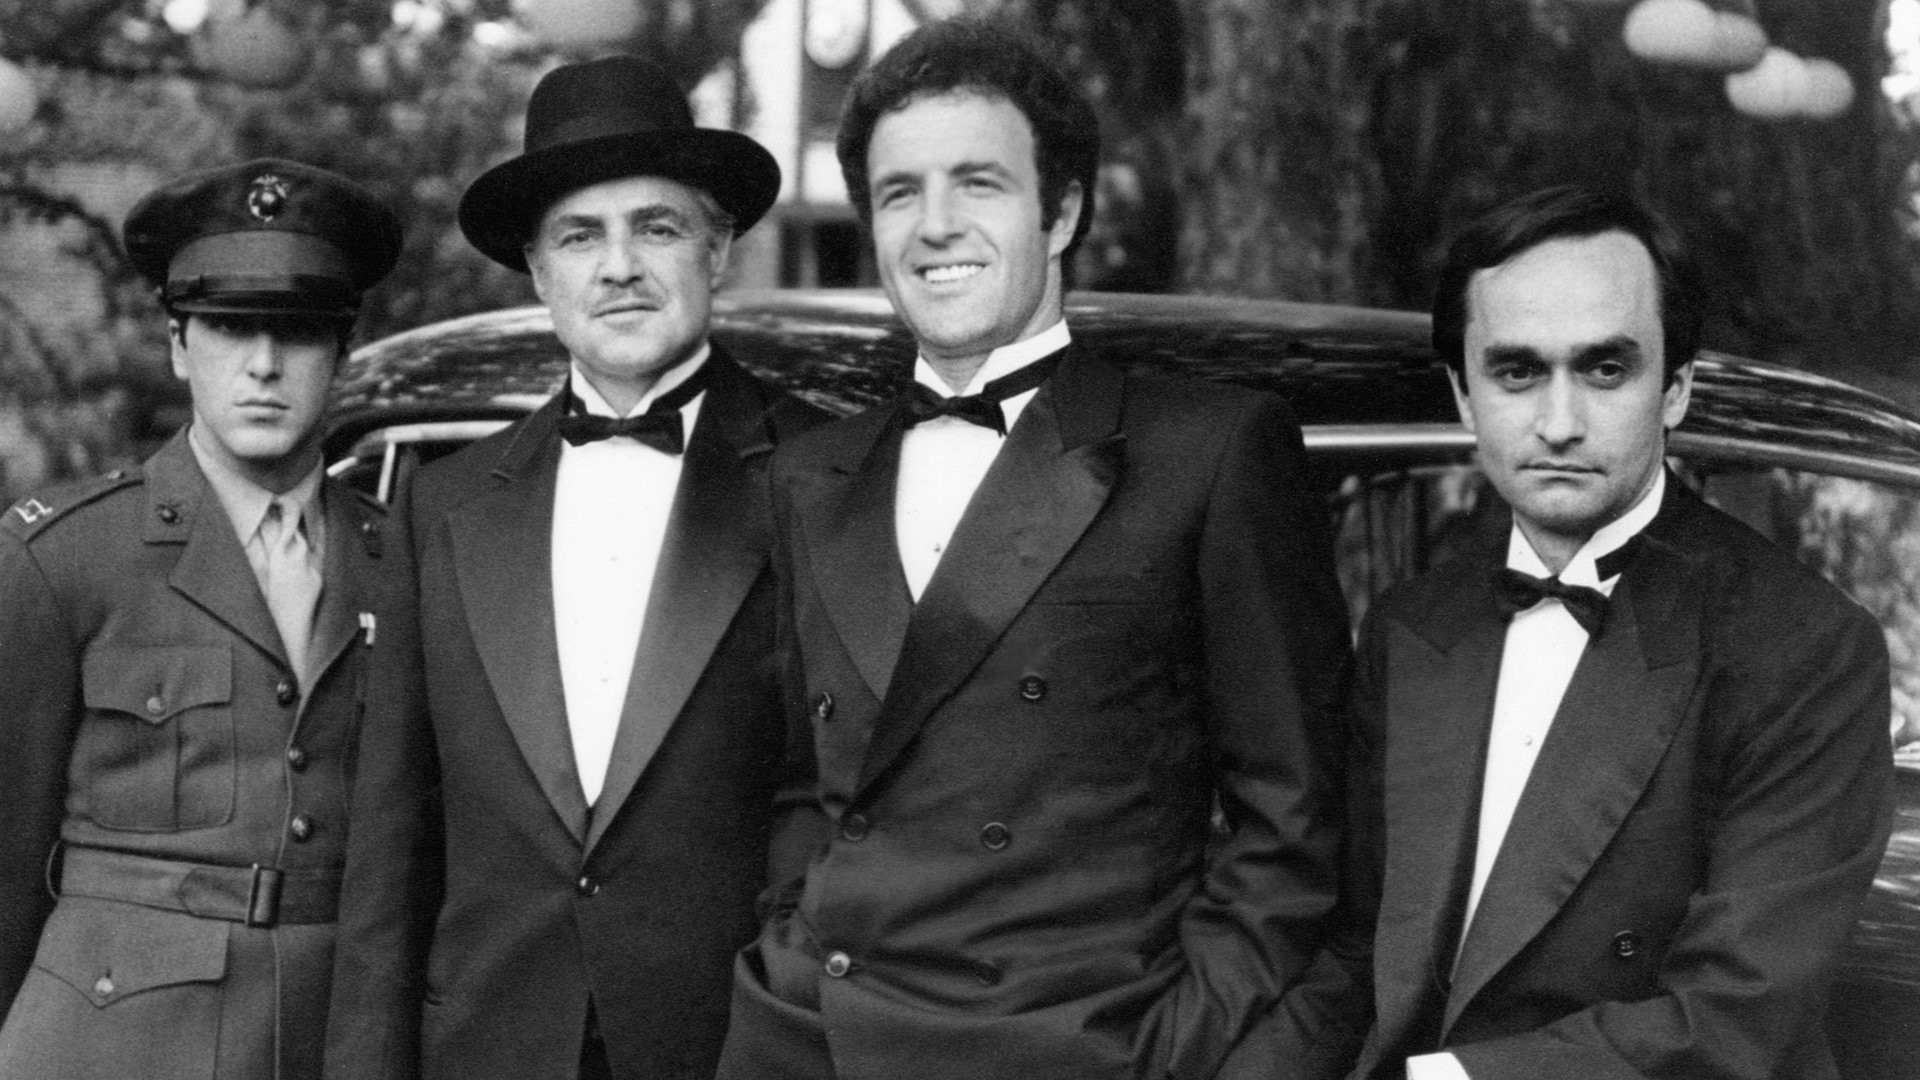 the, Godfather, Monochrome, Vito, Corleone, Marlon, Brando, Al, Pacino, Michael, Corleone, James, Caan, John, Caza, Men, Males, Actor, Mafia Wallpaper